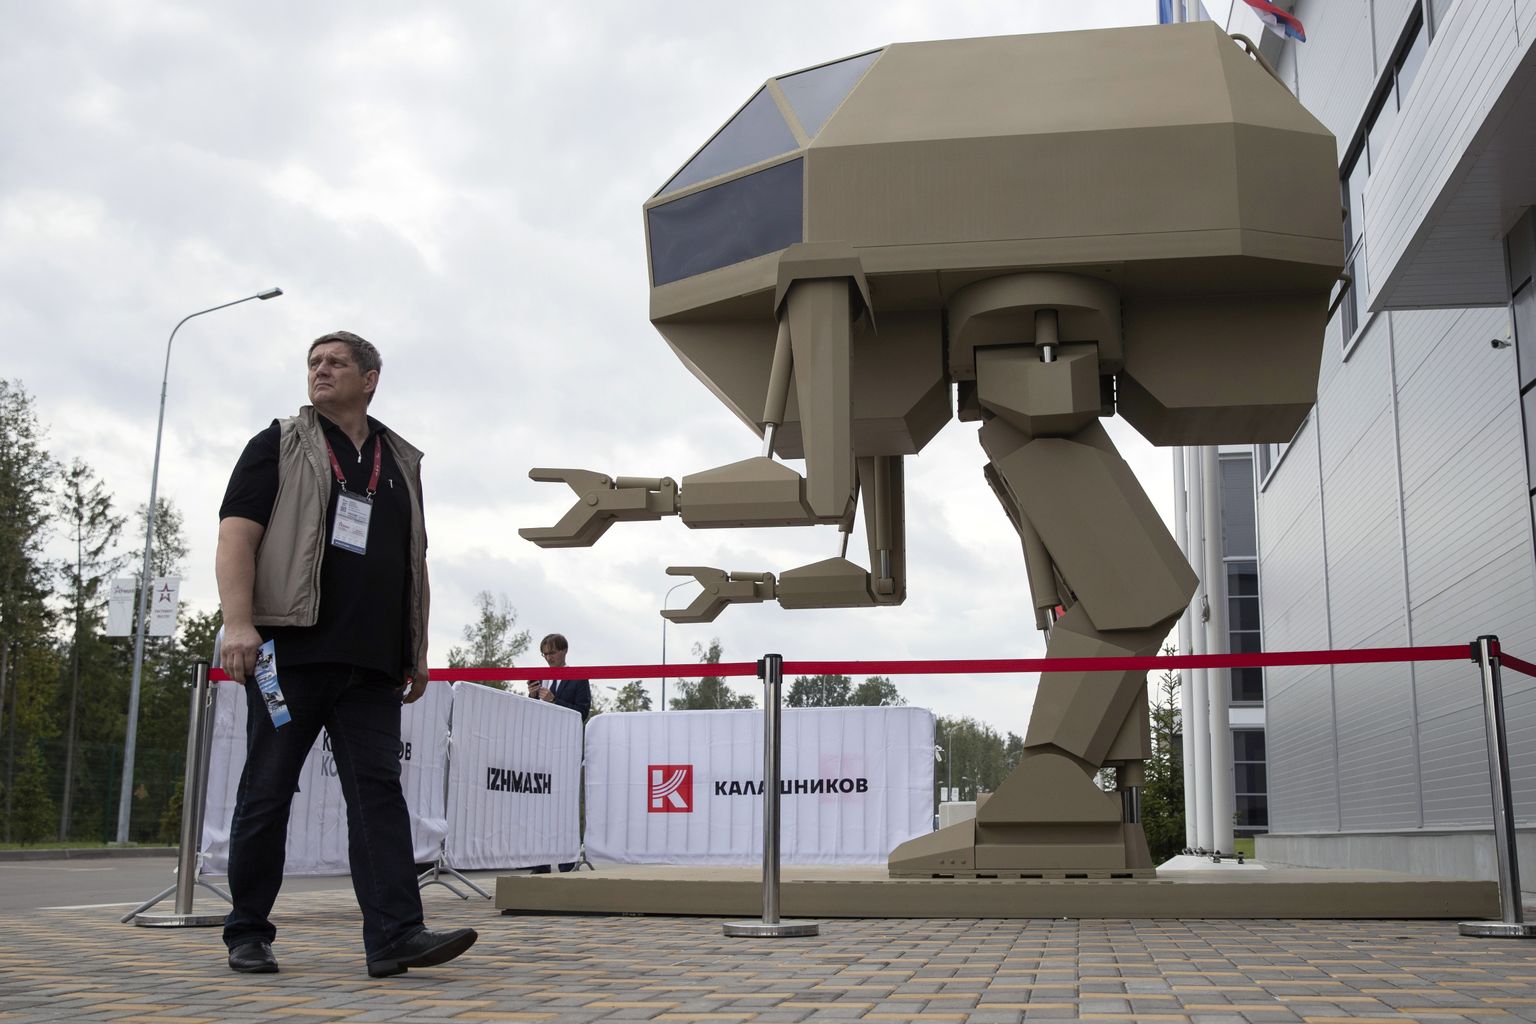 Moskva lähedal Alabinos mõned aastad tagasi toimunud sõjatehnika foorumil esitles Kalašnikovi kontsern roboti-stiilis mudelit, mis kujutab ühe tulevikurelvana robotit lahinguväljal. ÜRO-s ei õnnestu kuidagi kokku leppida autonoomsete relvade kasutamise reguleerimises, mida on juba tehtud keemia- ja biorelvadega.